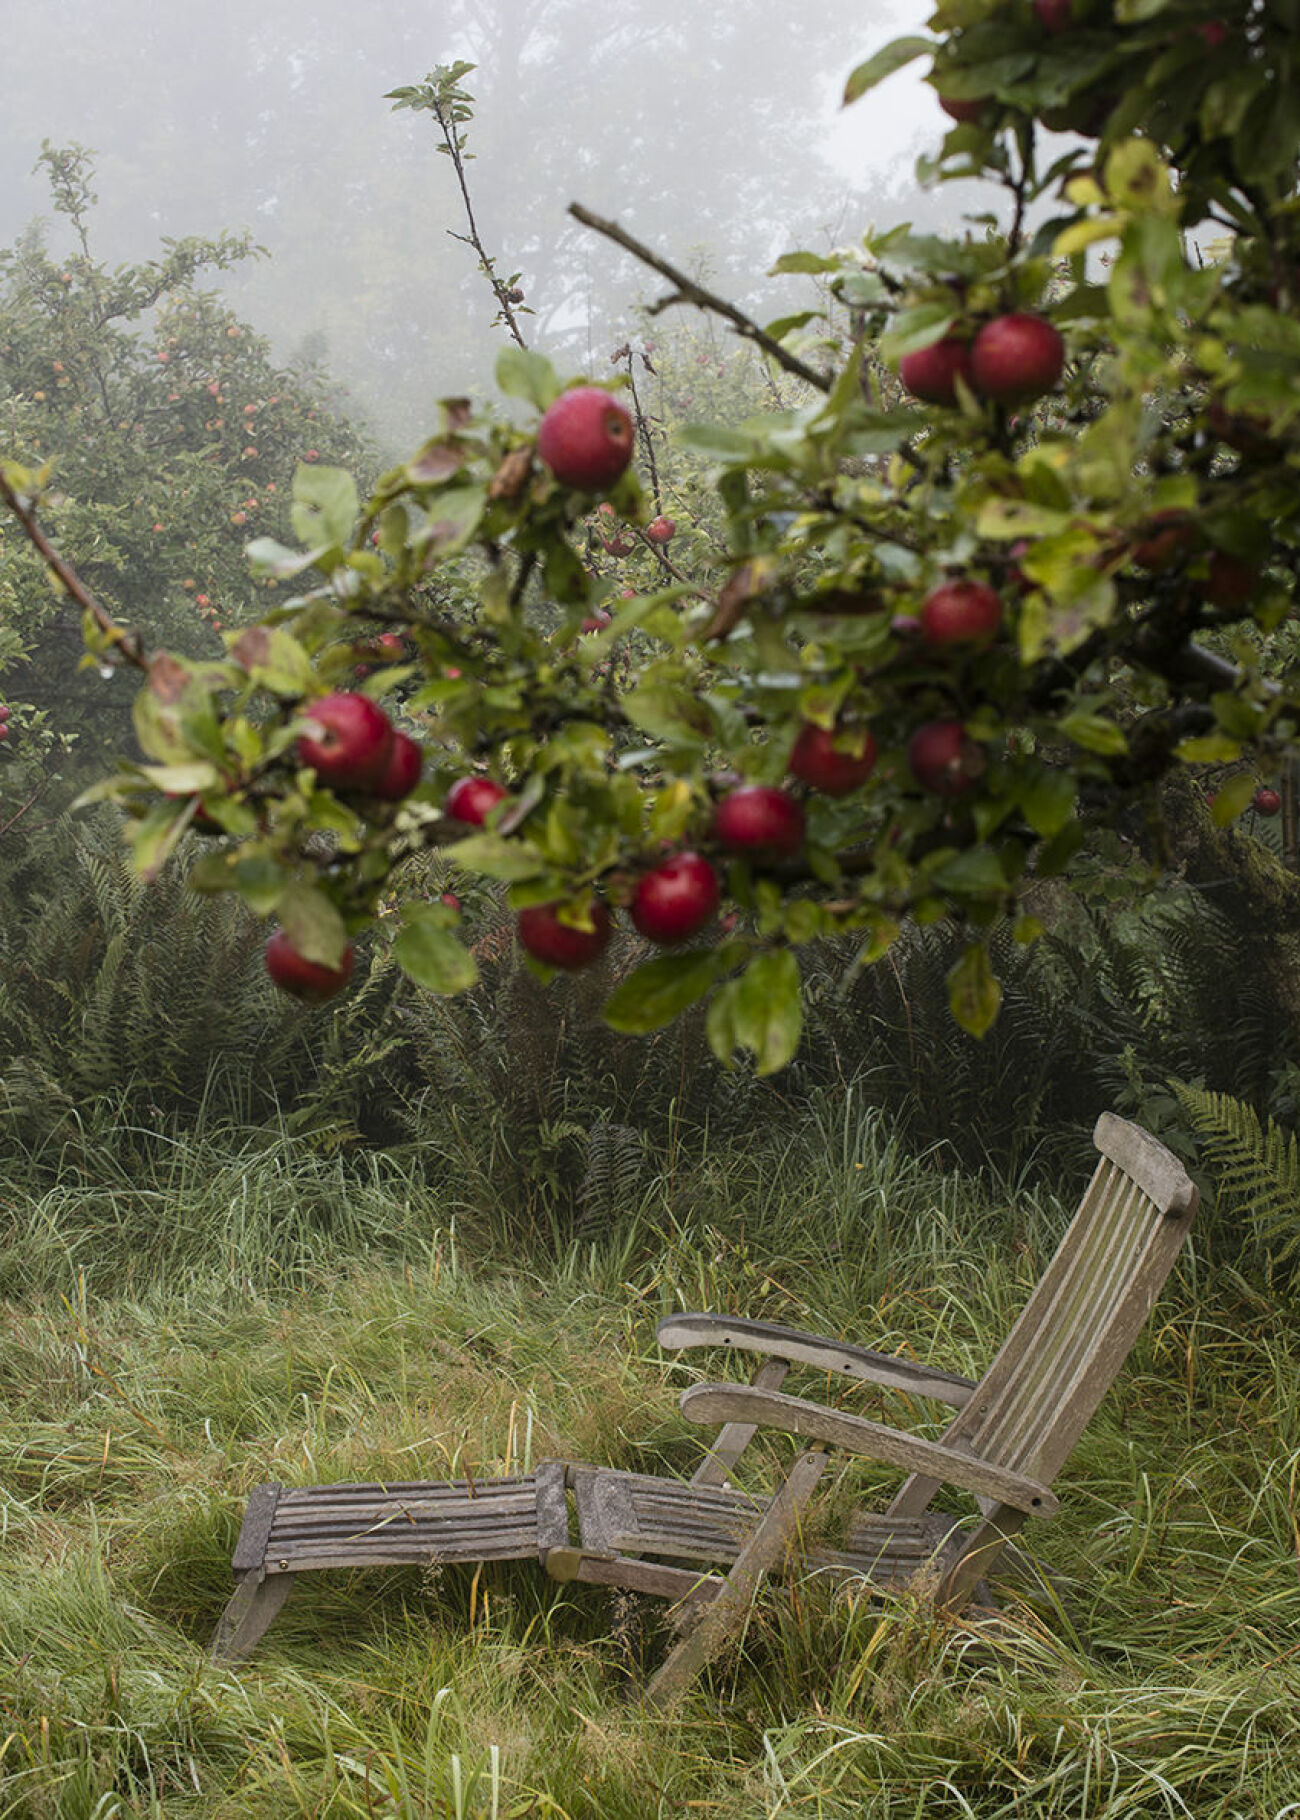 Fotografen Charlie Drevstams vildvuxna äppelträdgård. 